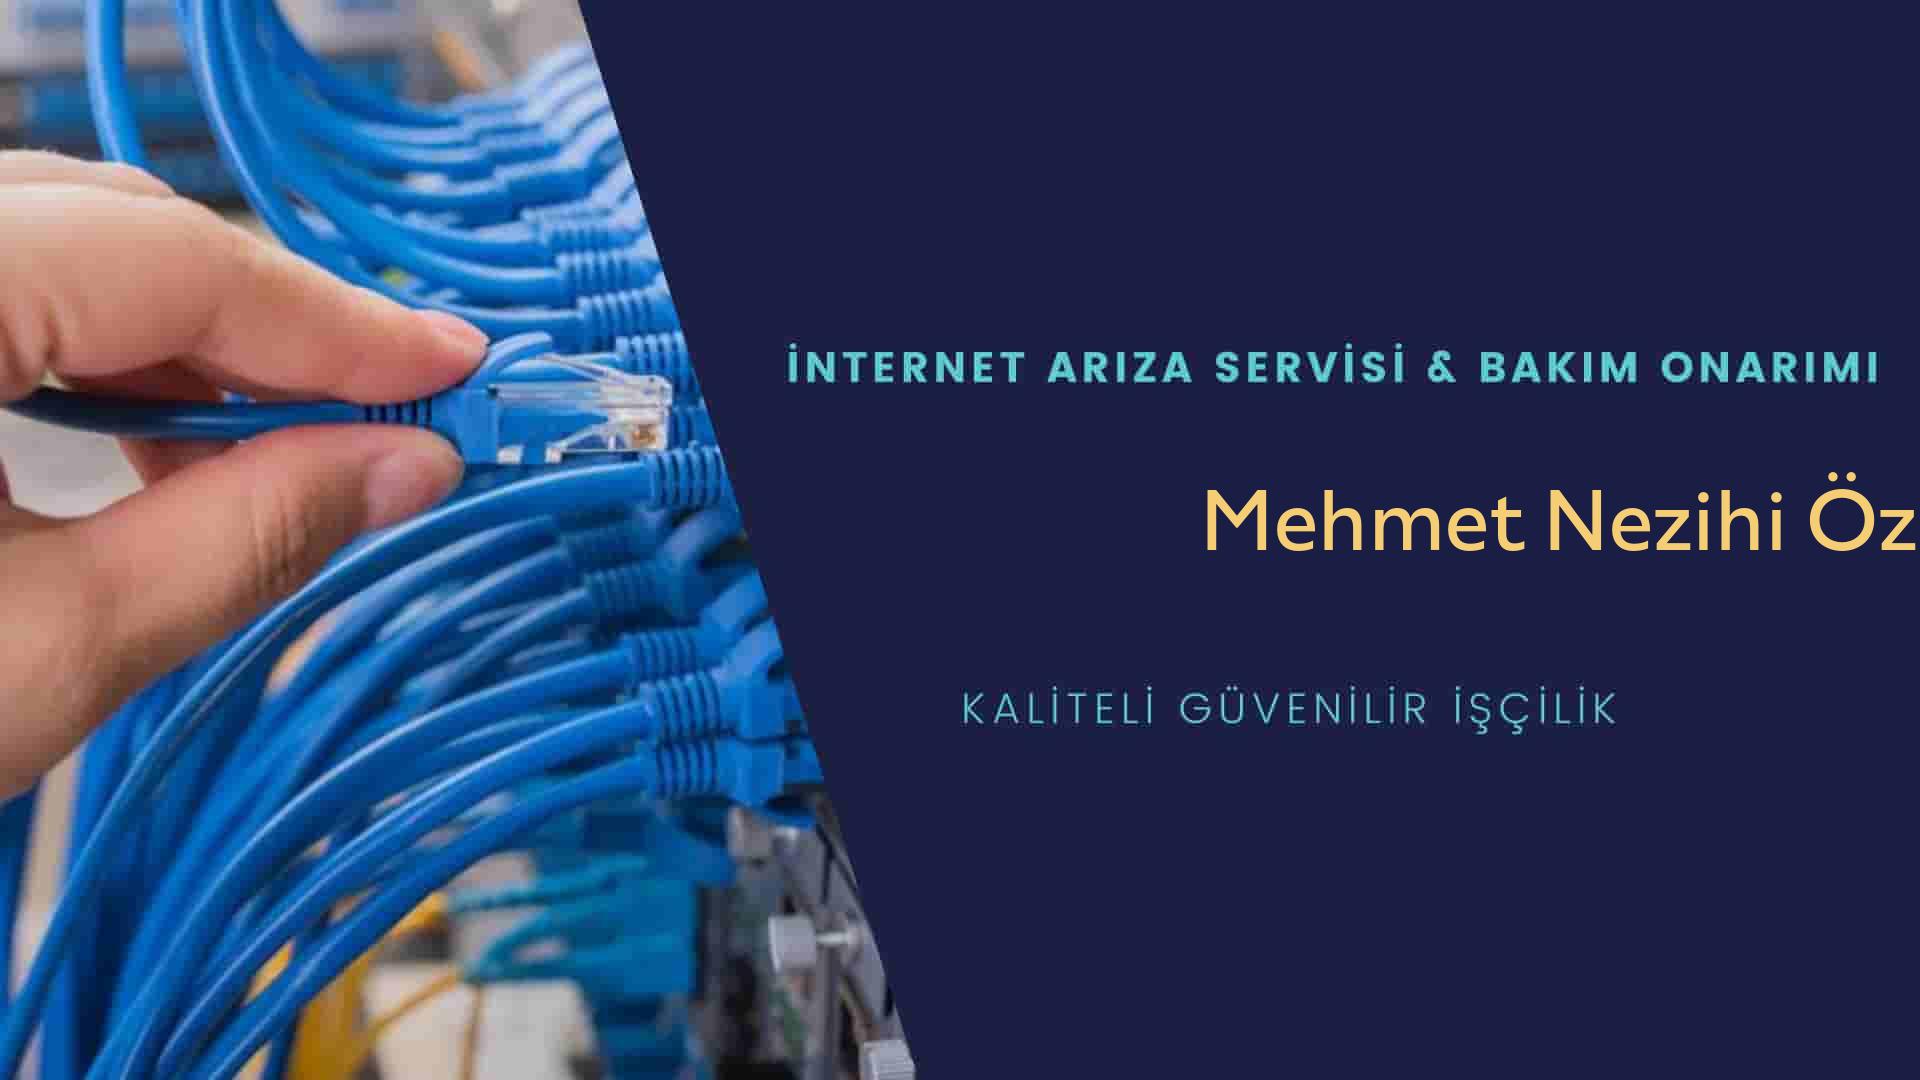 Mehmet Nezihi Özmen  internet kablosu çekimi yapan yerler veya elektrikçiler mi? arıyorsunuz doğru yerdesiniz o zaman sizlere 7/24 yardımcı olacak profesyonel ustalarımız bir telefon kadar yakındır size.